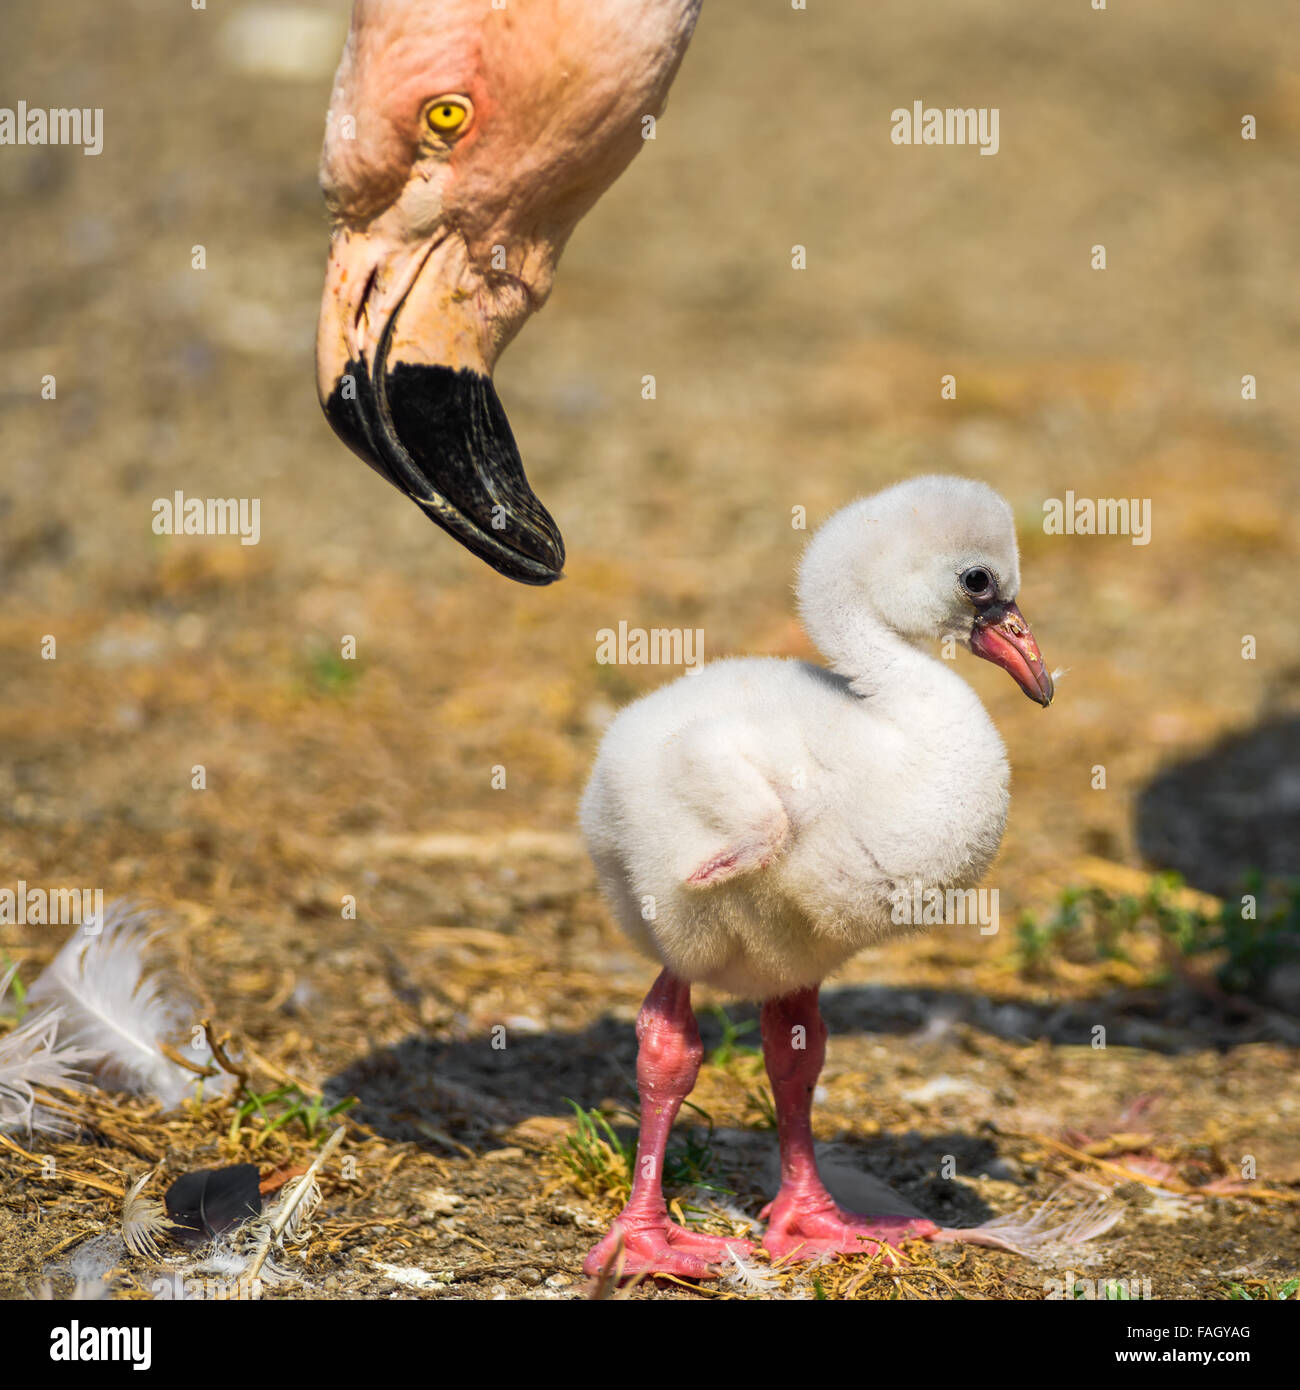 Baby bird de l'American flamingo (Phoenicopterus ruber) près de son parent. Banque D'Images